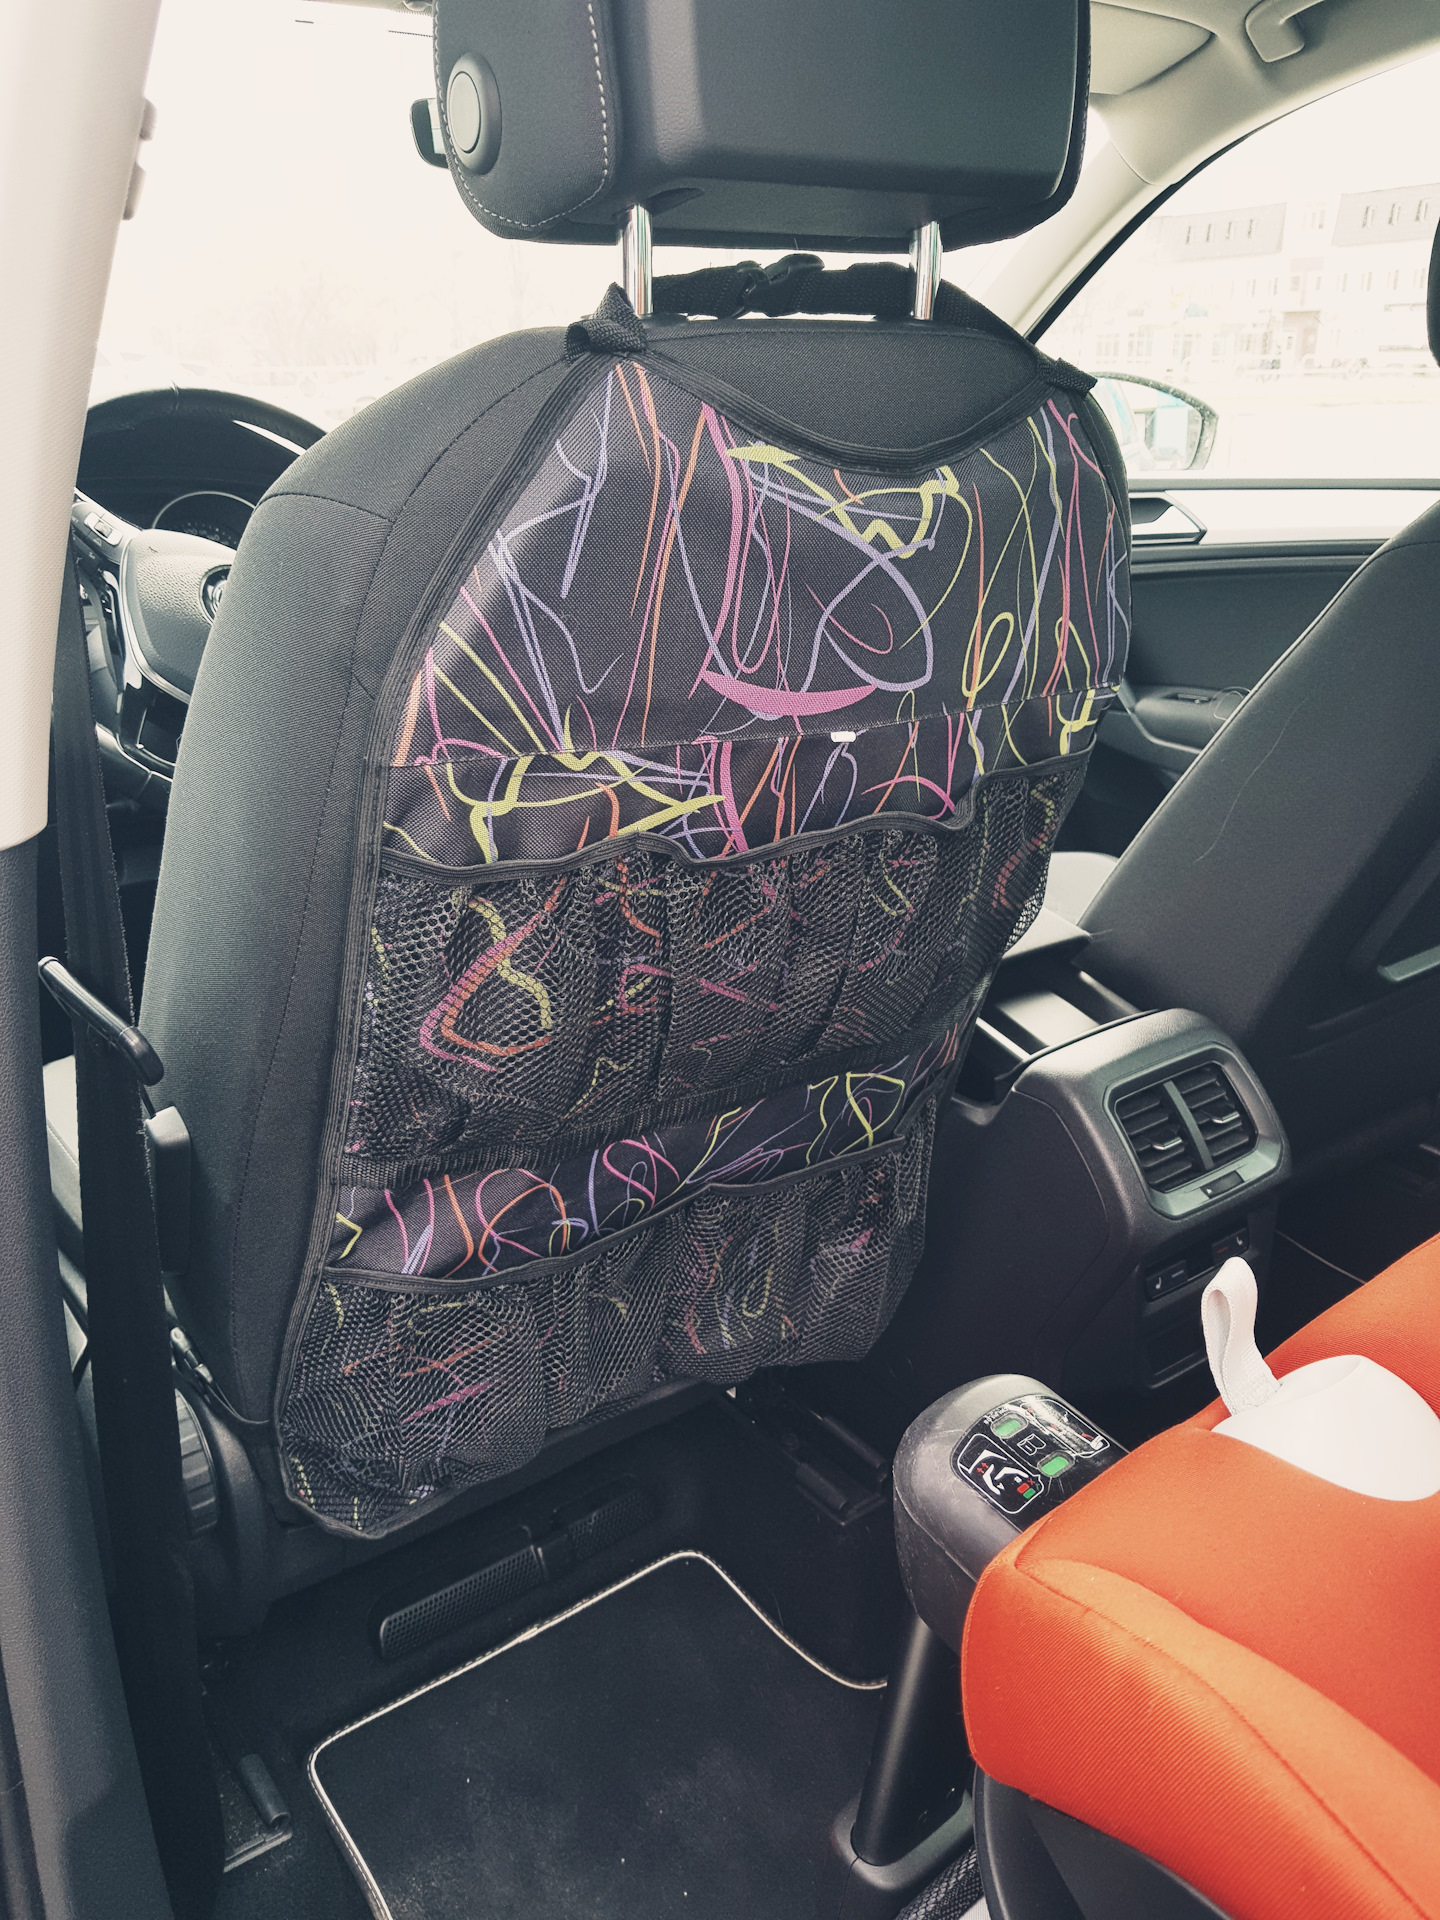 Защитная накидка Mobylos прозрачная защита от детских ног на спинку сиденья автомобиля